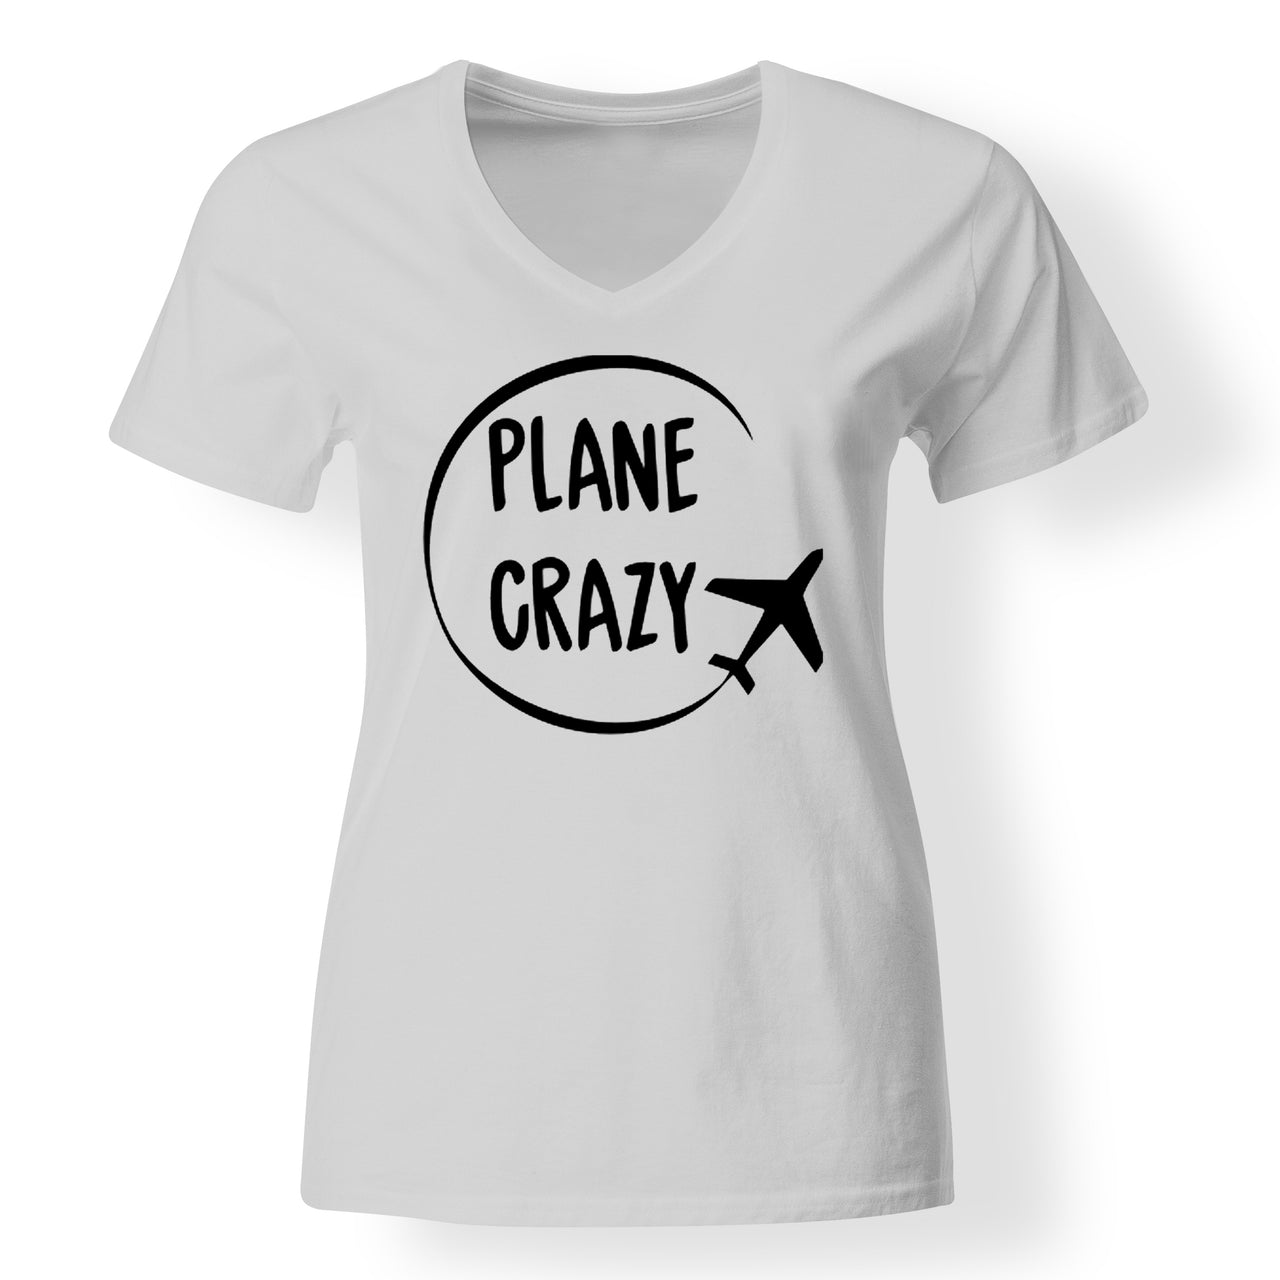 Plane Crazy Designed V-Neck T-Shirts